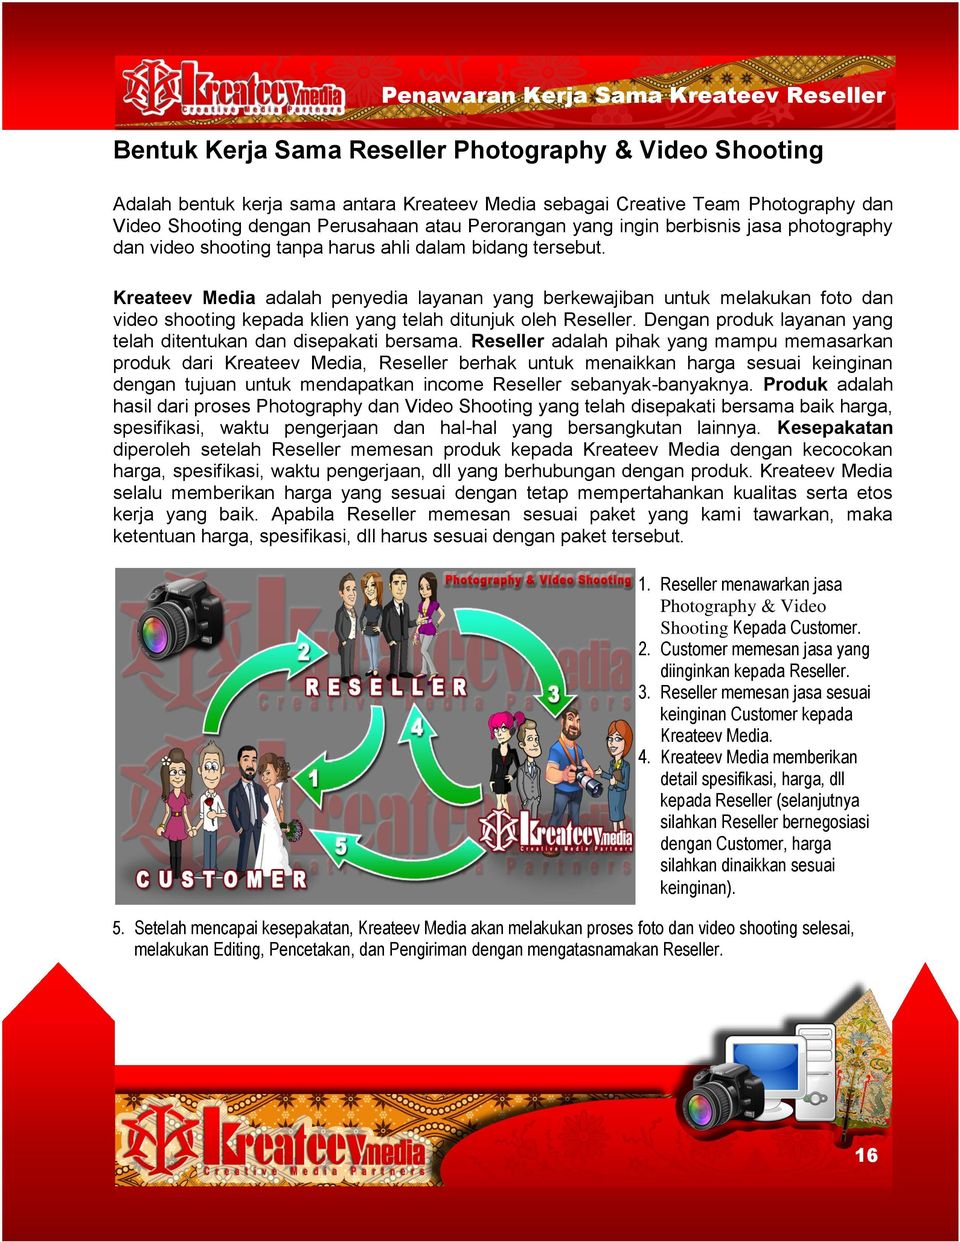 Kreateev Media adalah penyedia layanan yang berkewajiban untuk melakukan foto dan video shooting kepada klien yang telah ditunjuk oleh Reseller.